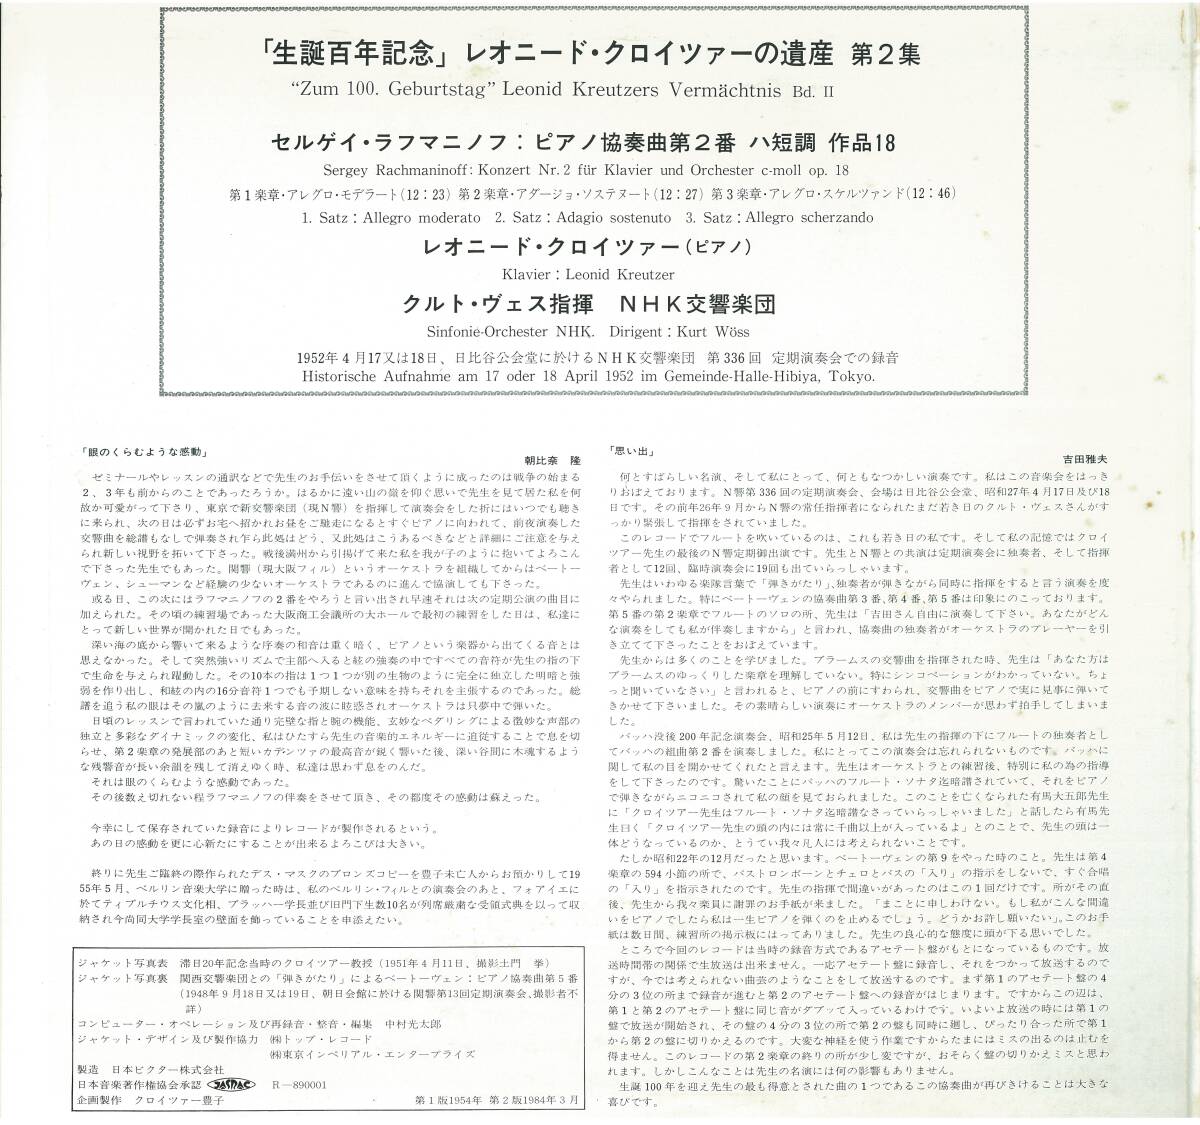  высшее редкий собственный . запись Leo need * Kreuzer. . производство no. 2 сборник черновой maninof: фортепьяно концерт no. 2 номер (1952 год Live )ATRAS-8310